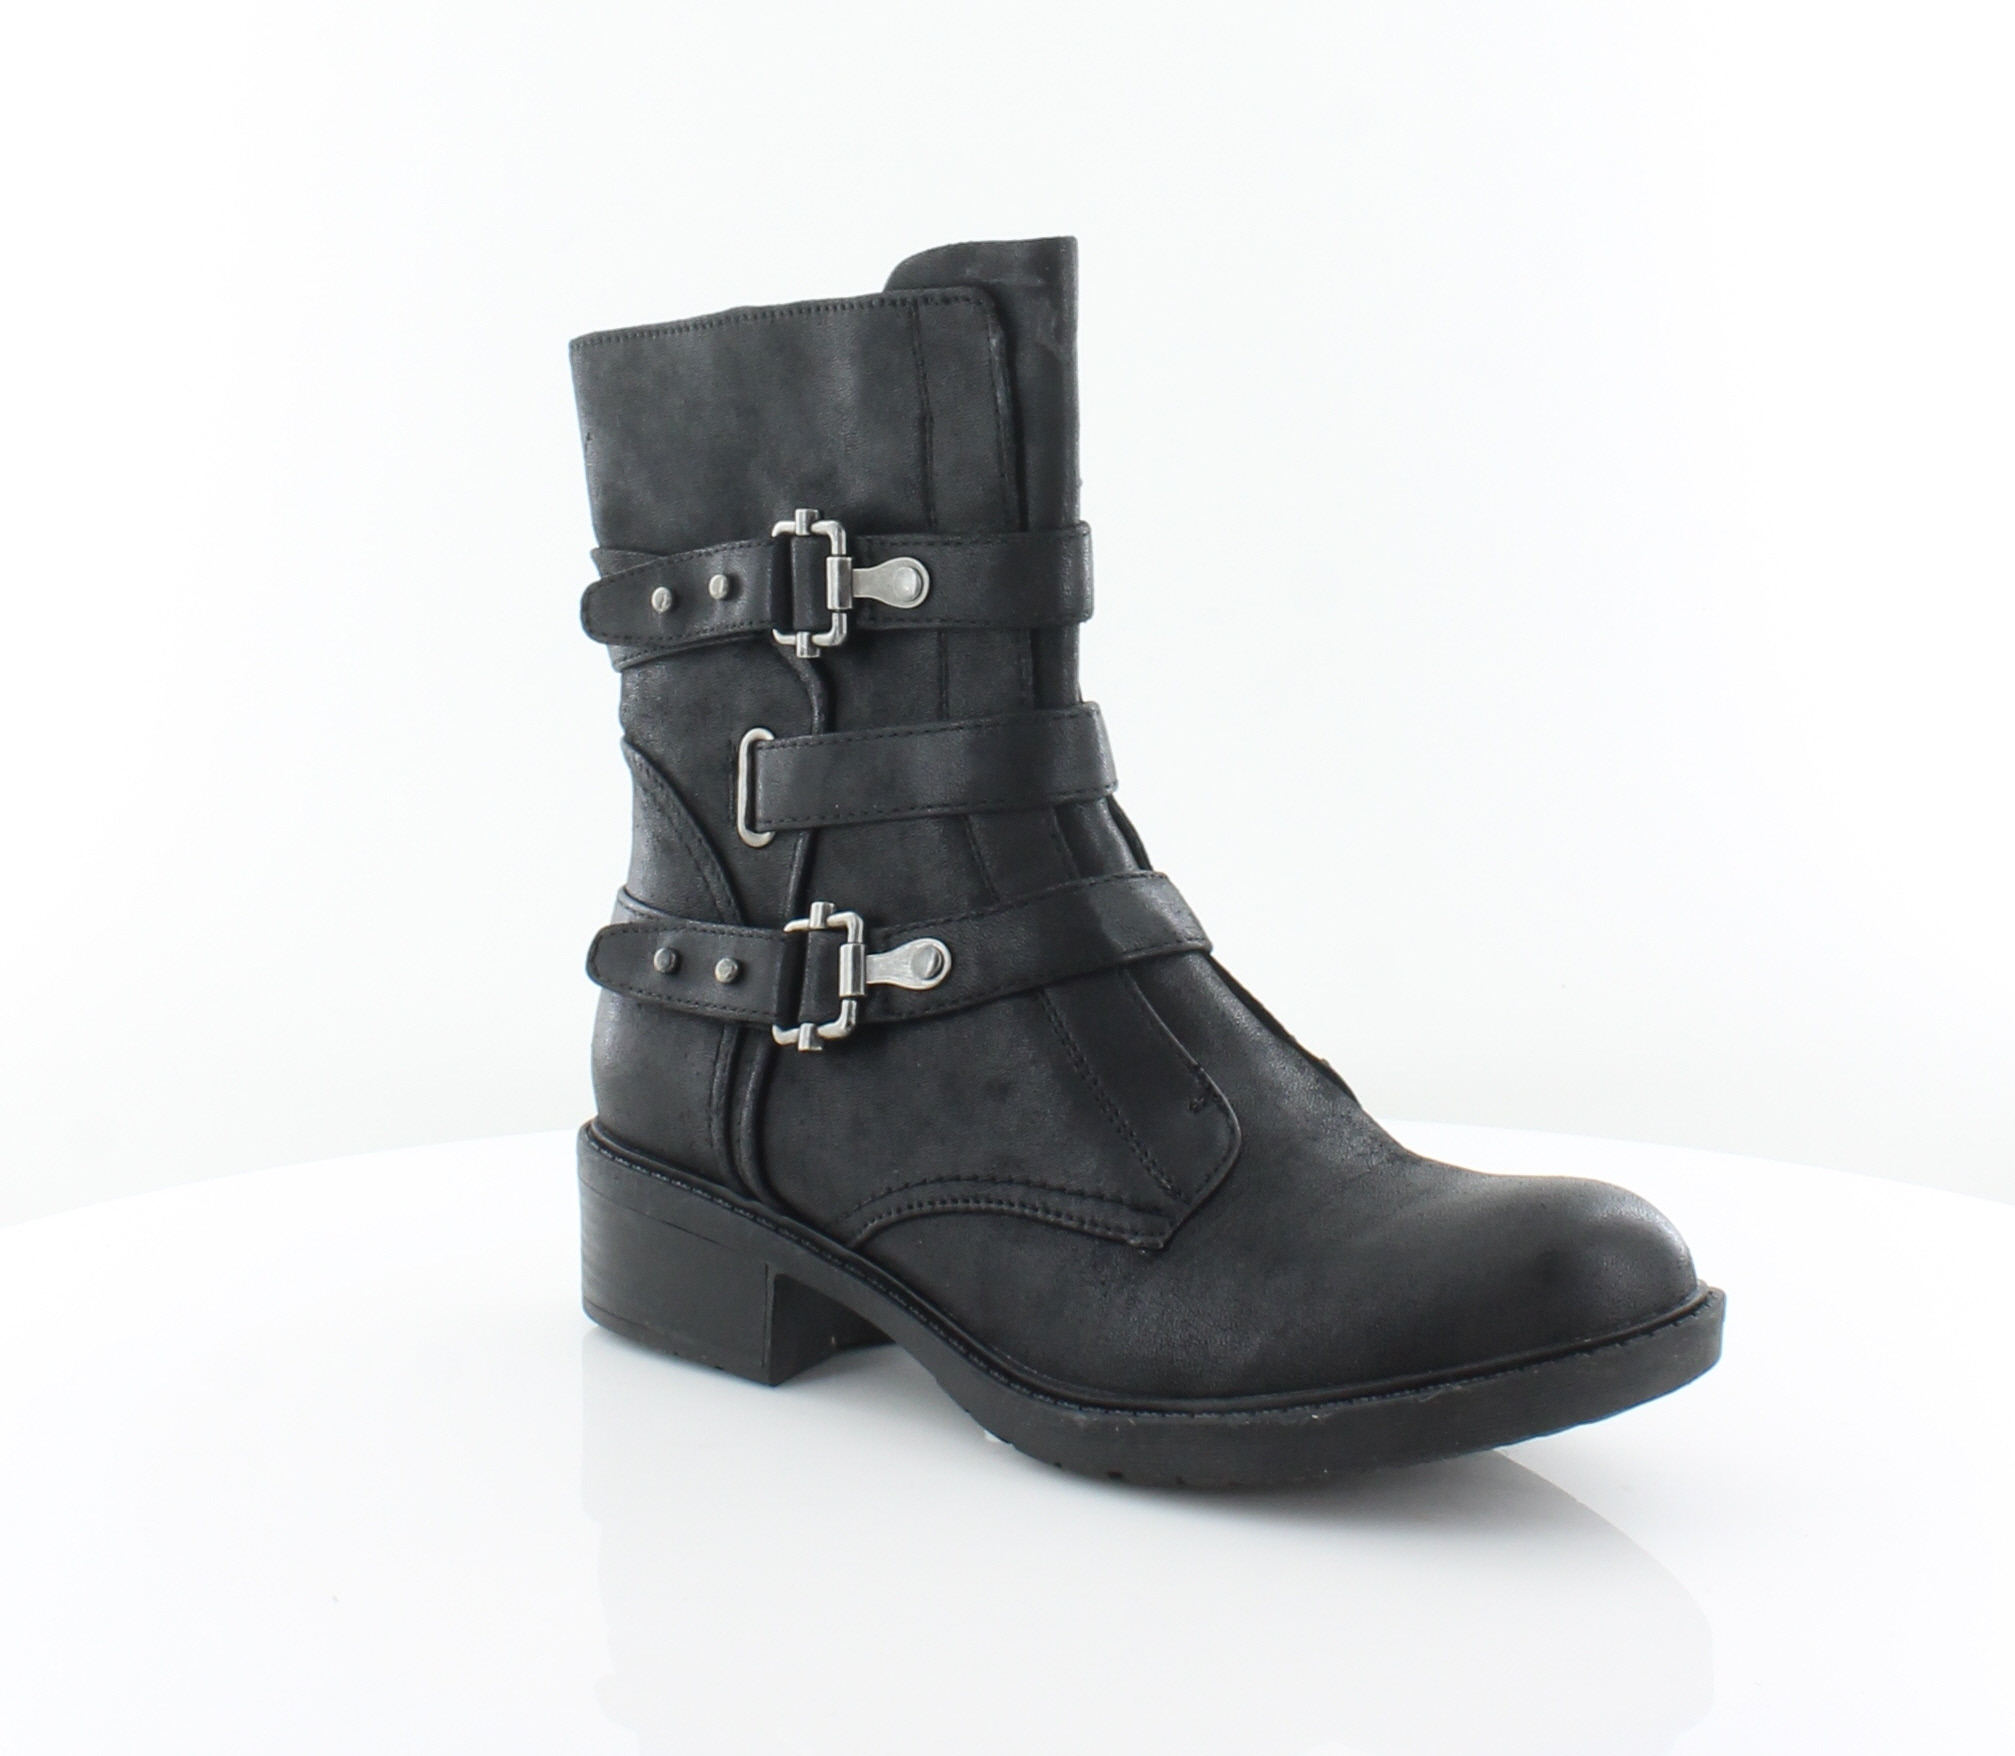 Baretraps Thomas Black Womens Shoes Size 8.5 M Boots MSRP $89 | eBay